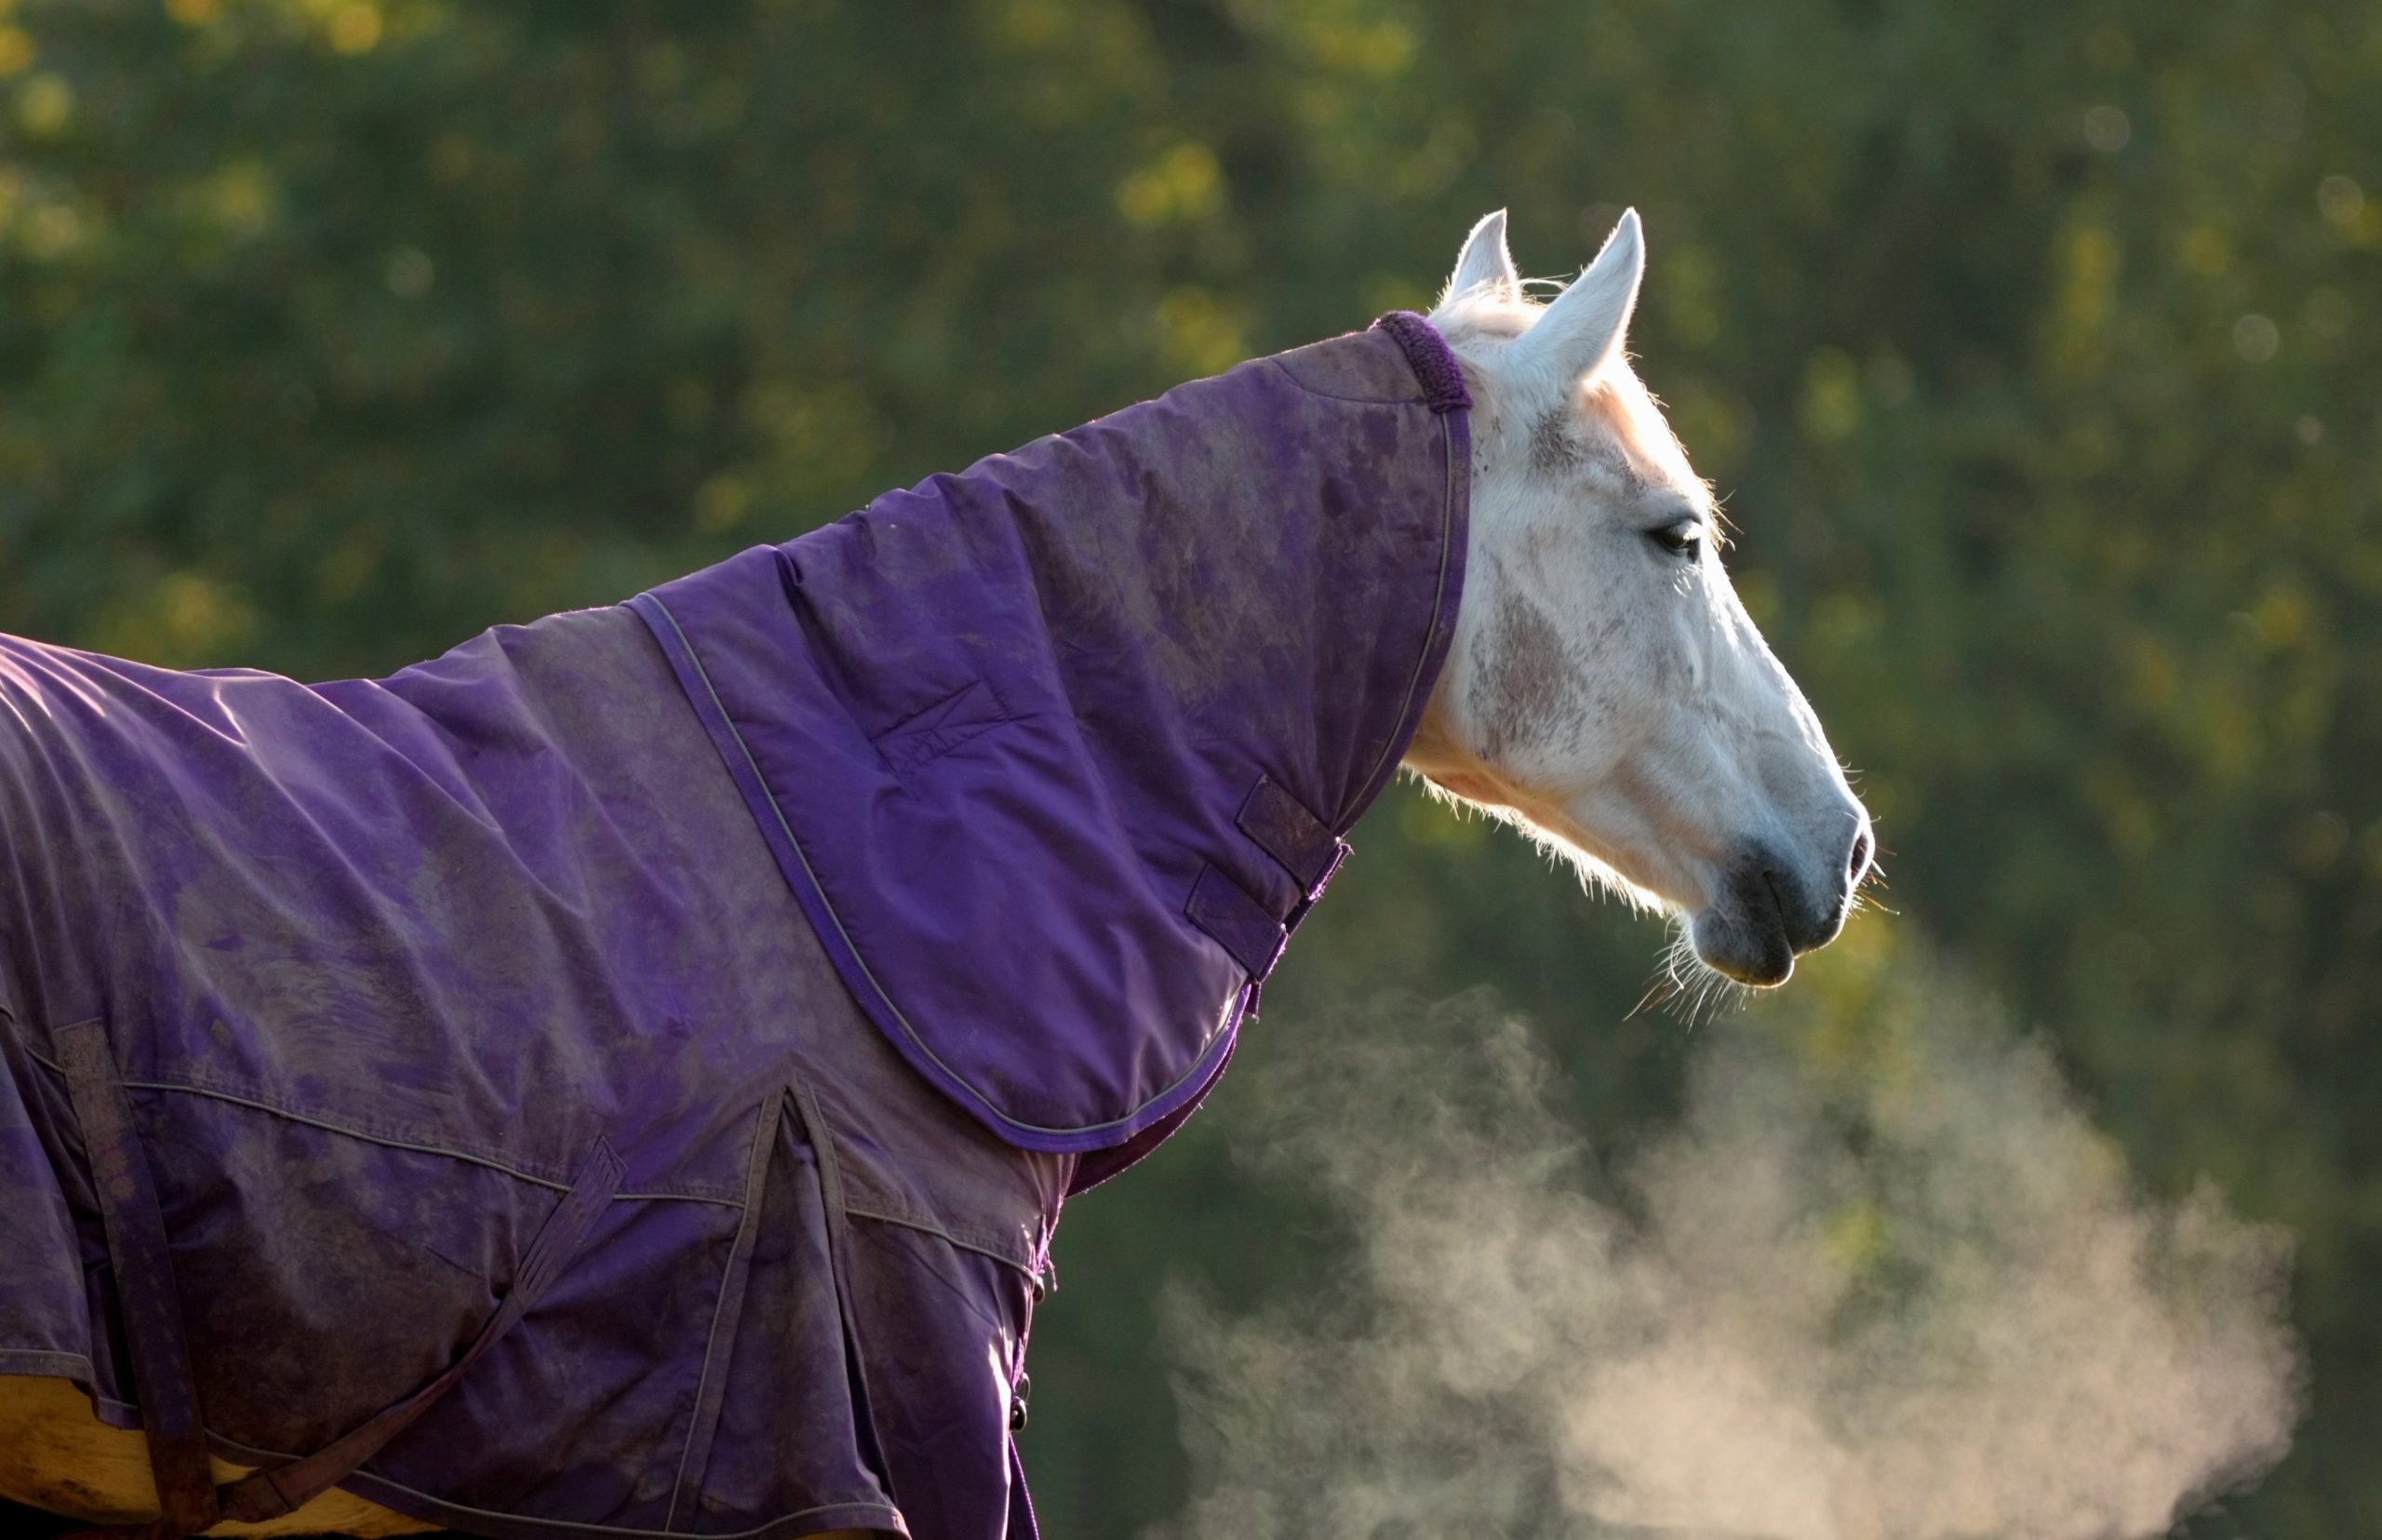 A horse wearing a purple blanket